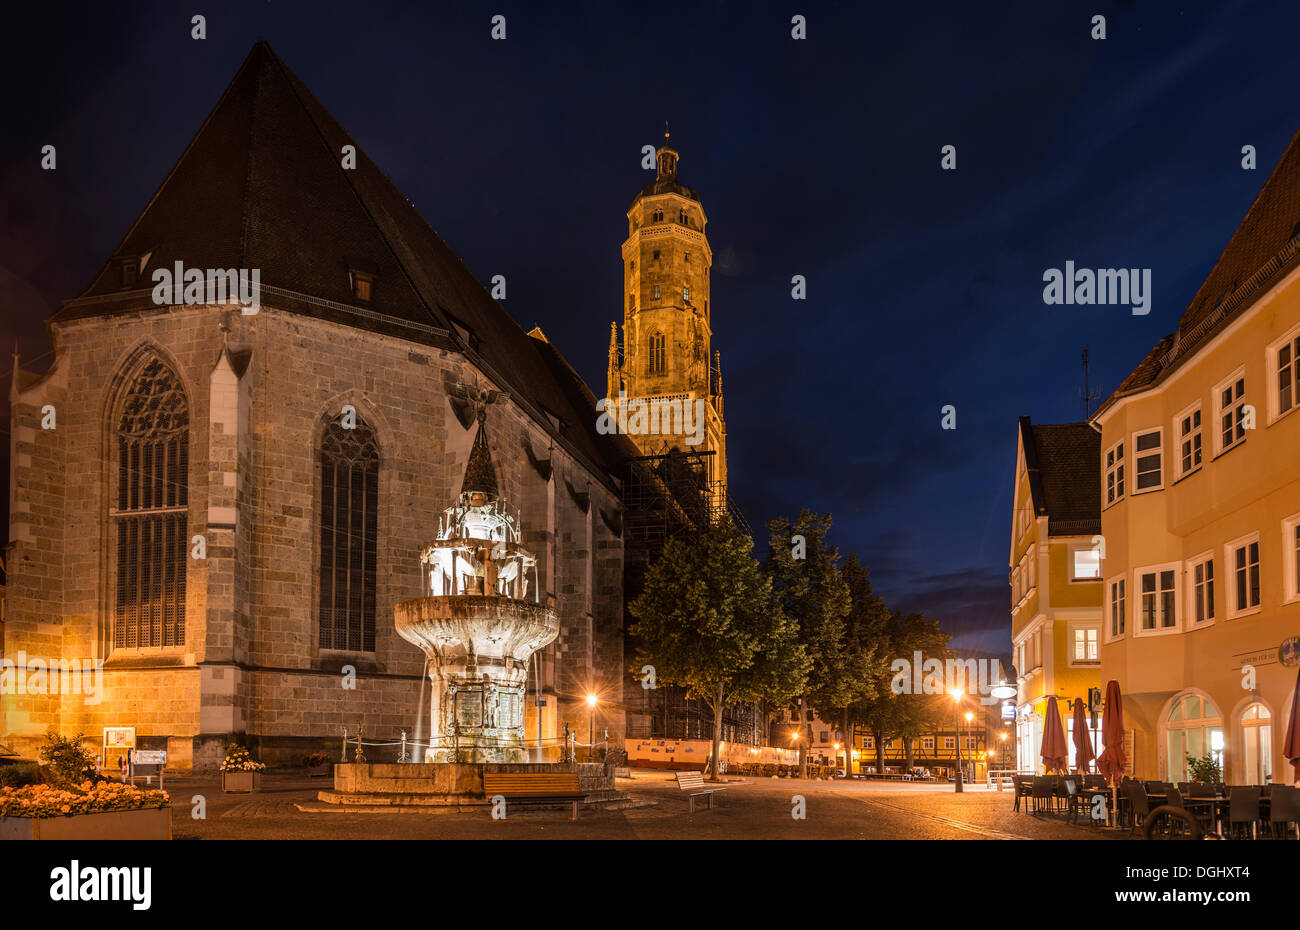 St.-Georgs Kirche mit ihrem Turm namens 'Daniel' und der Marktbrunnen in Nacht, historische Mitte, Nördlingen, Bayern Stockfoto